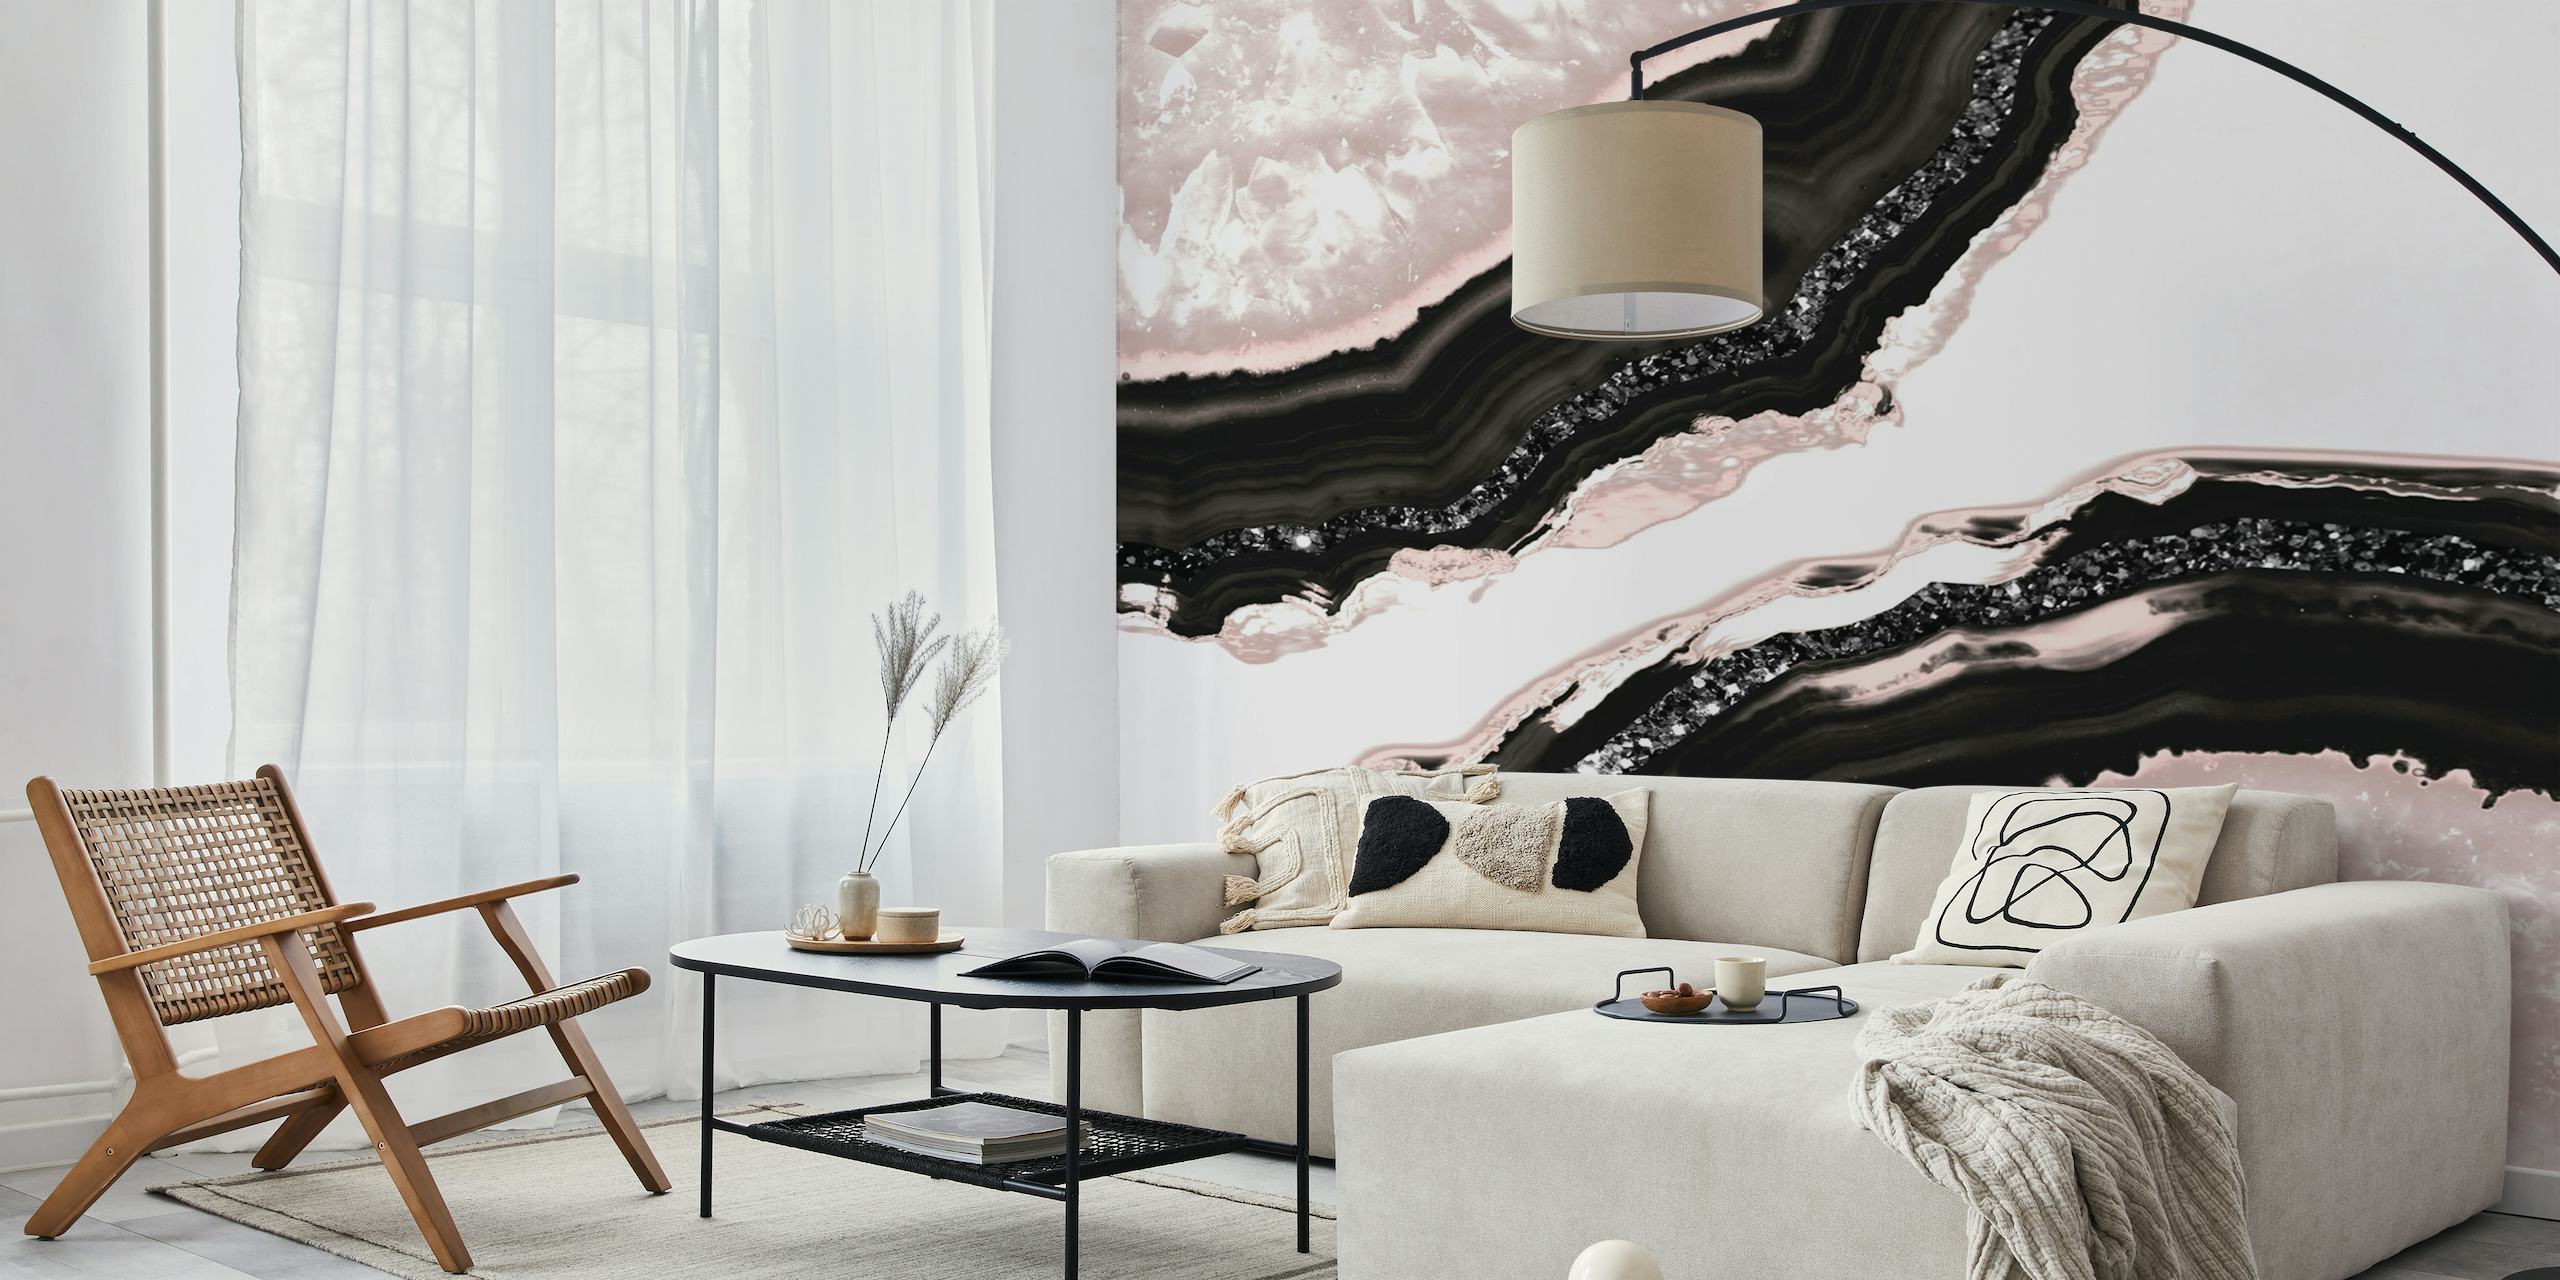 Mural de parede elegante inspirado em ágata com padrões em preto, branco e rosa suave e detalhes em glitter